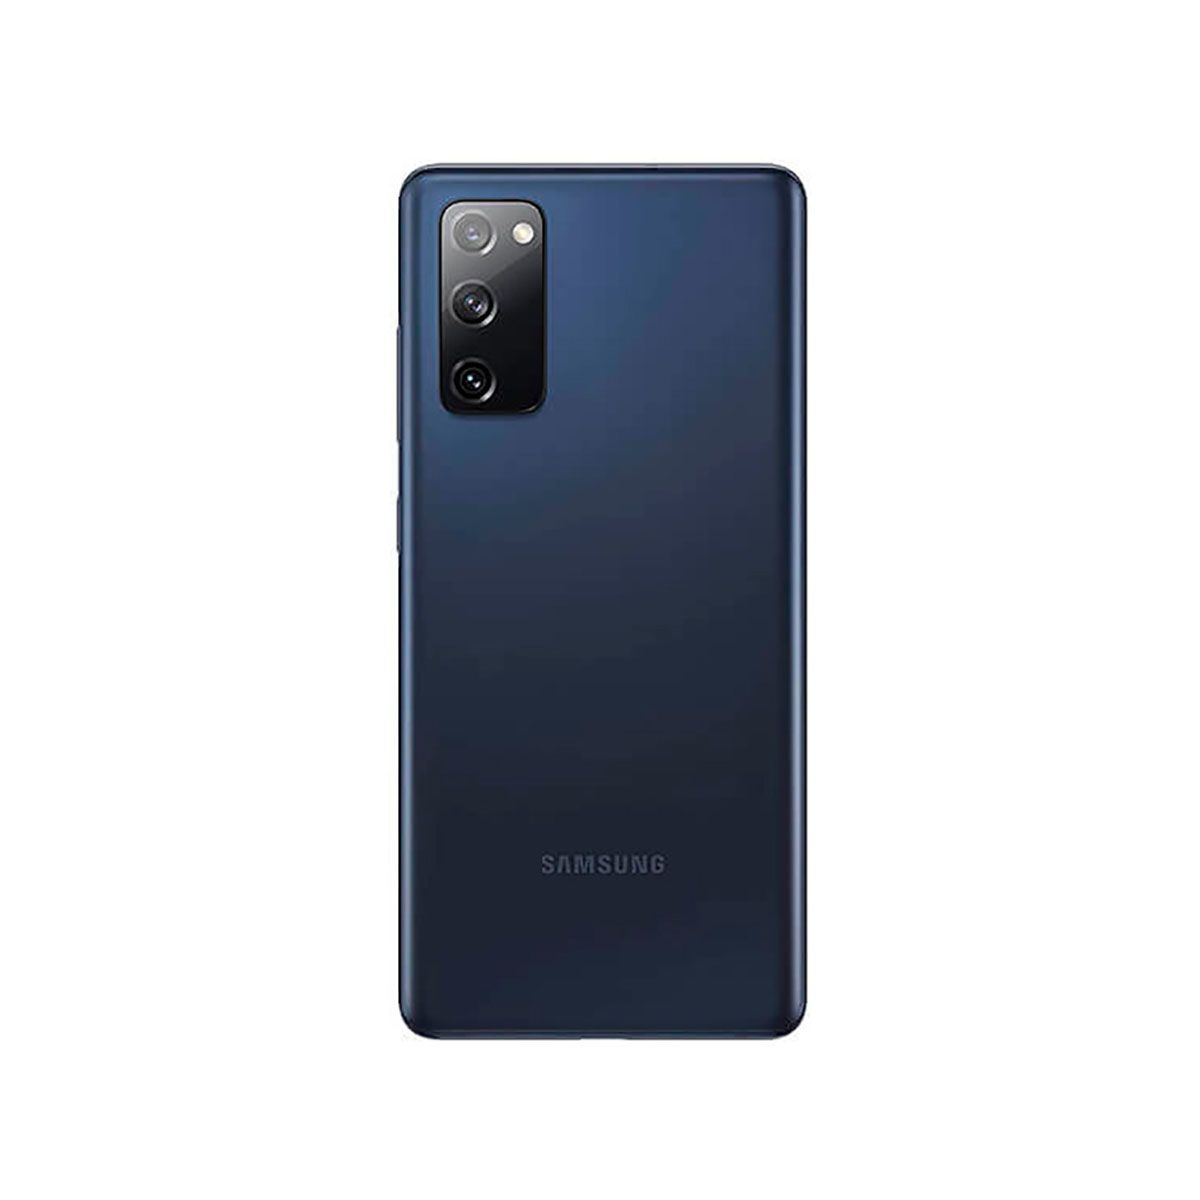 Samsung Galaxy S20 FE 6GB/128GB Azul (Cloud Navy) Dual SIM G780